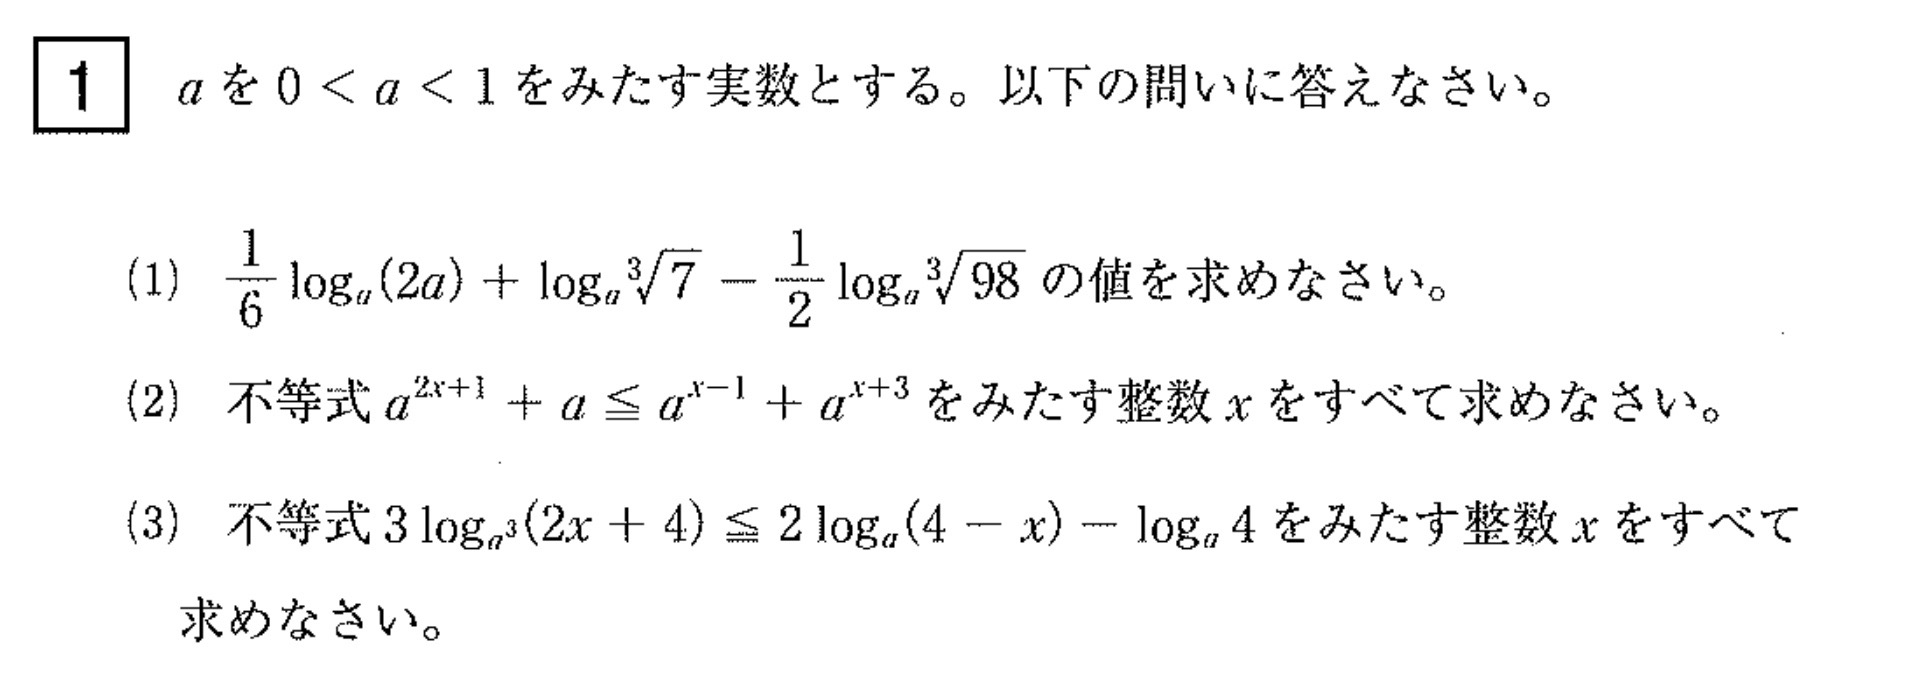 東京都立大学入試文系数学2022年(令和4年)過去問題